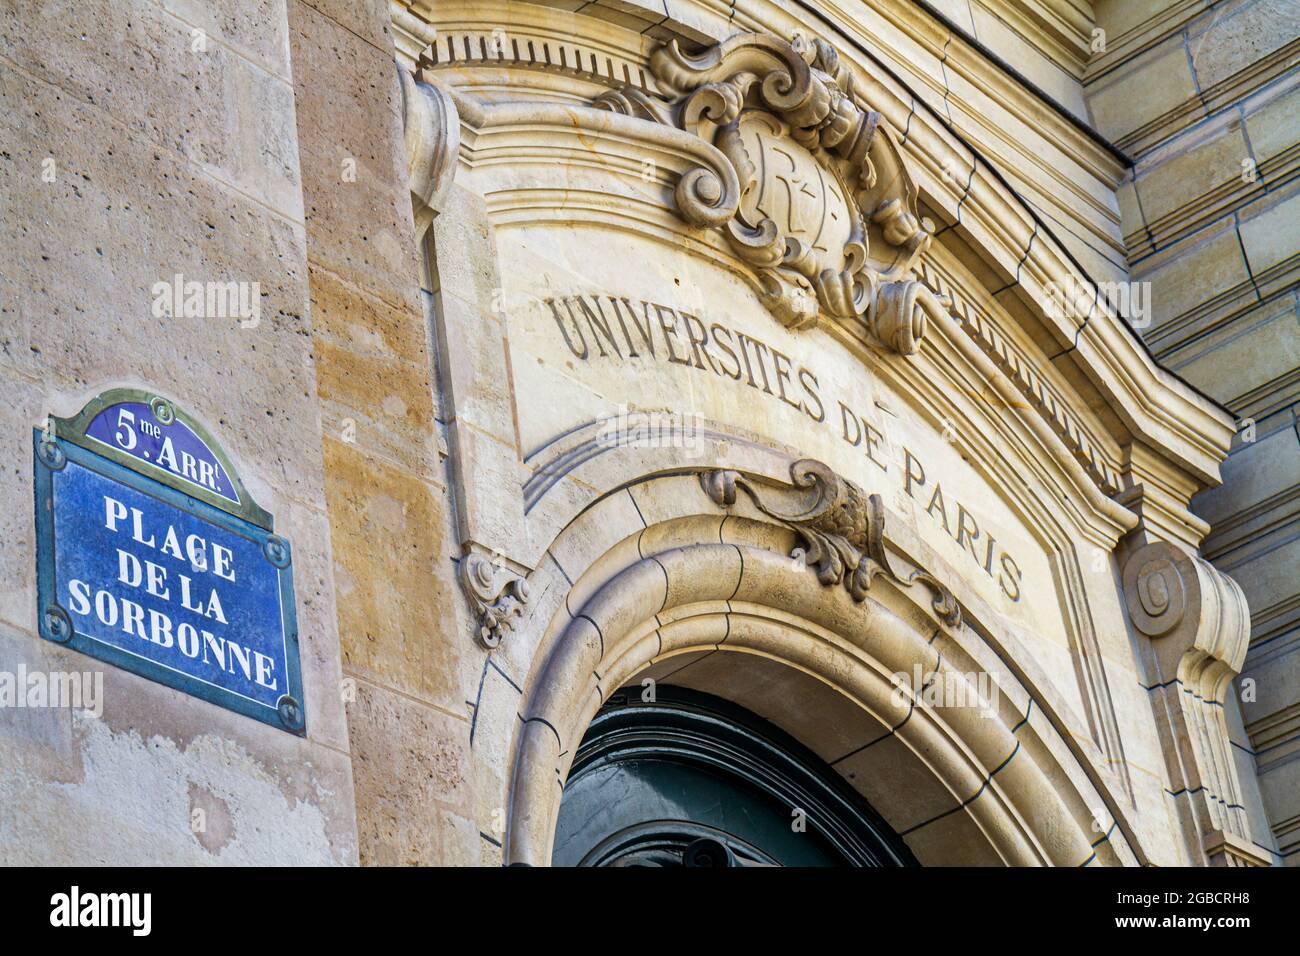 Paris France,5th arrondissement Latin Quarter Rive Gauche Left Bank,Place de la Sorbonne La Sorbonne Paris University front entrance school, Stock Photo